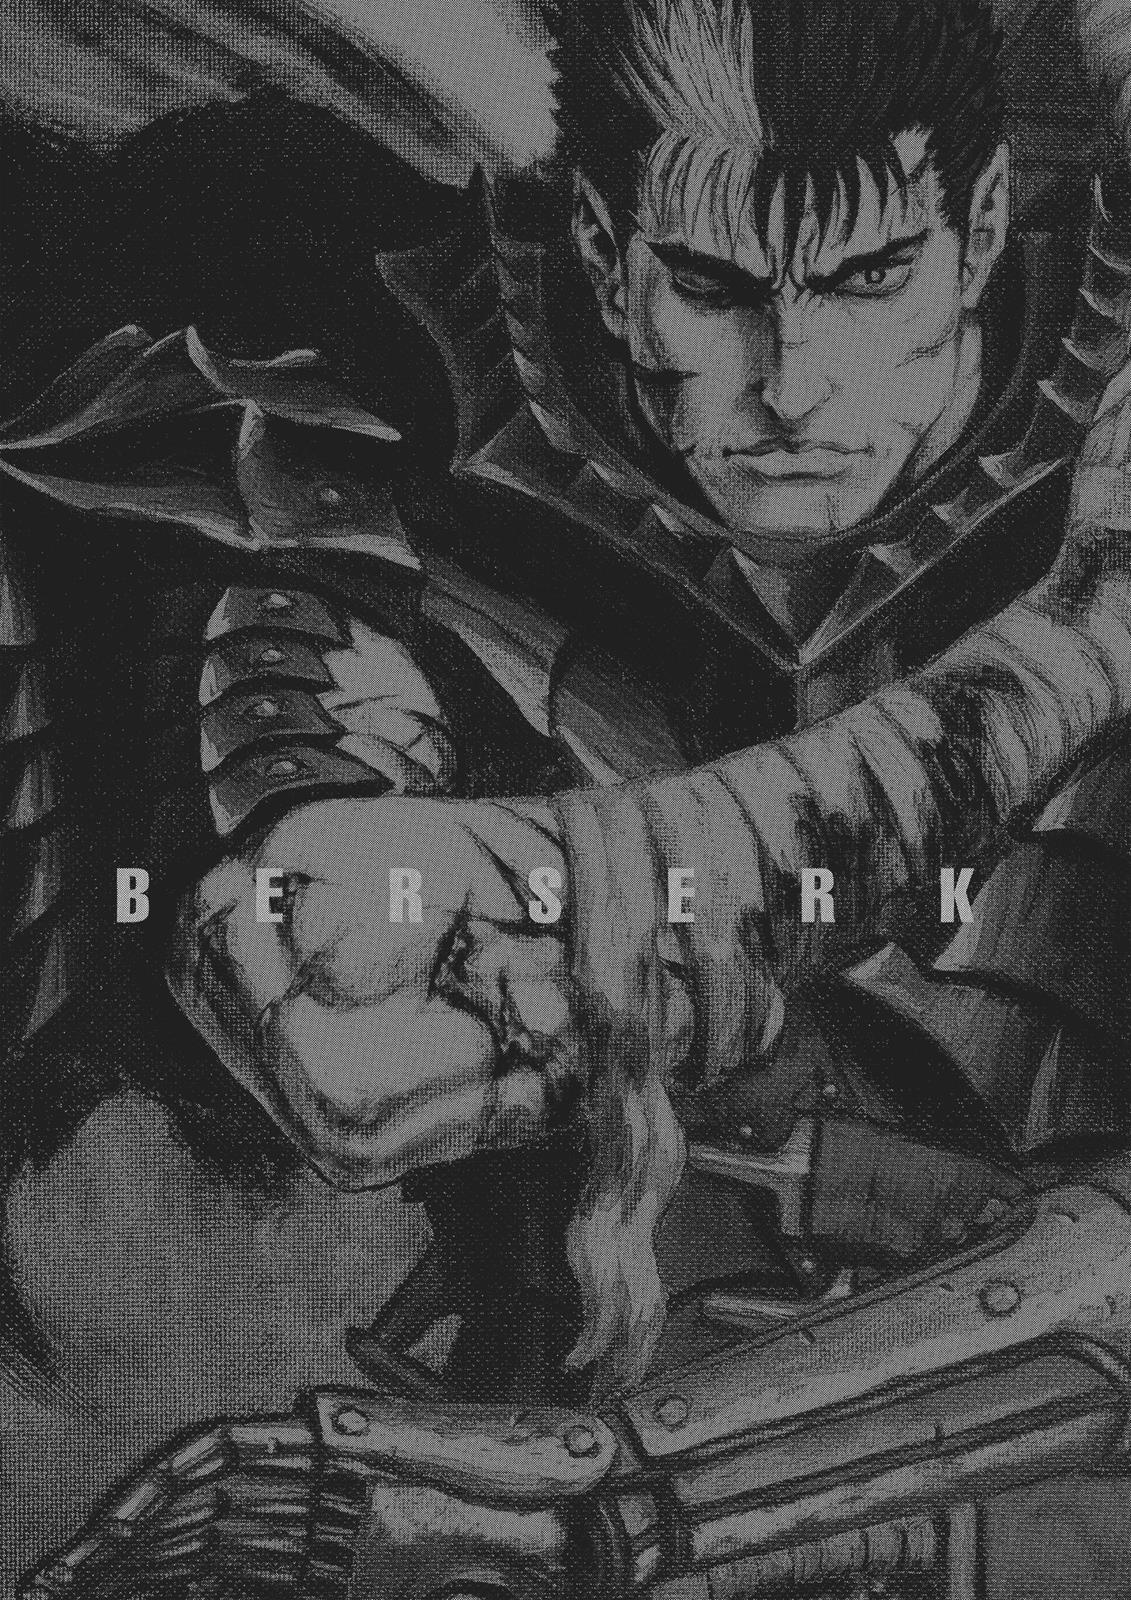 Berserk Manga Chapter 354 image 20